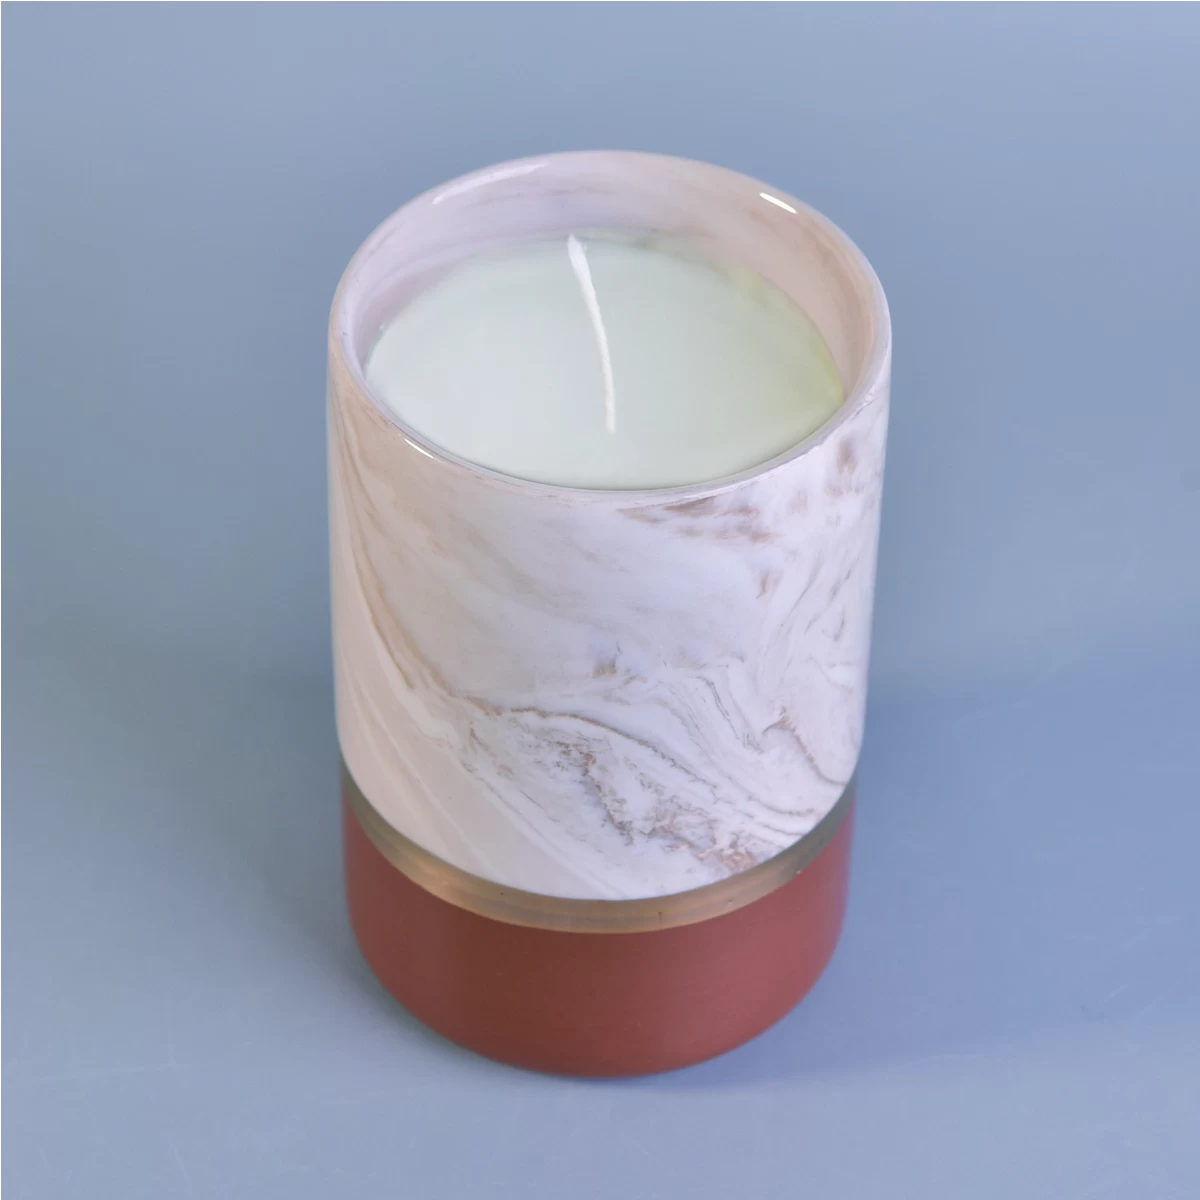 Sunny design amber cylinder votive ceramic candle holders in bulk